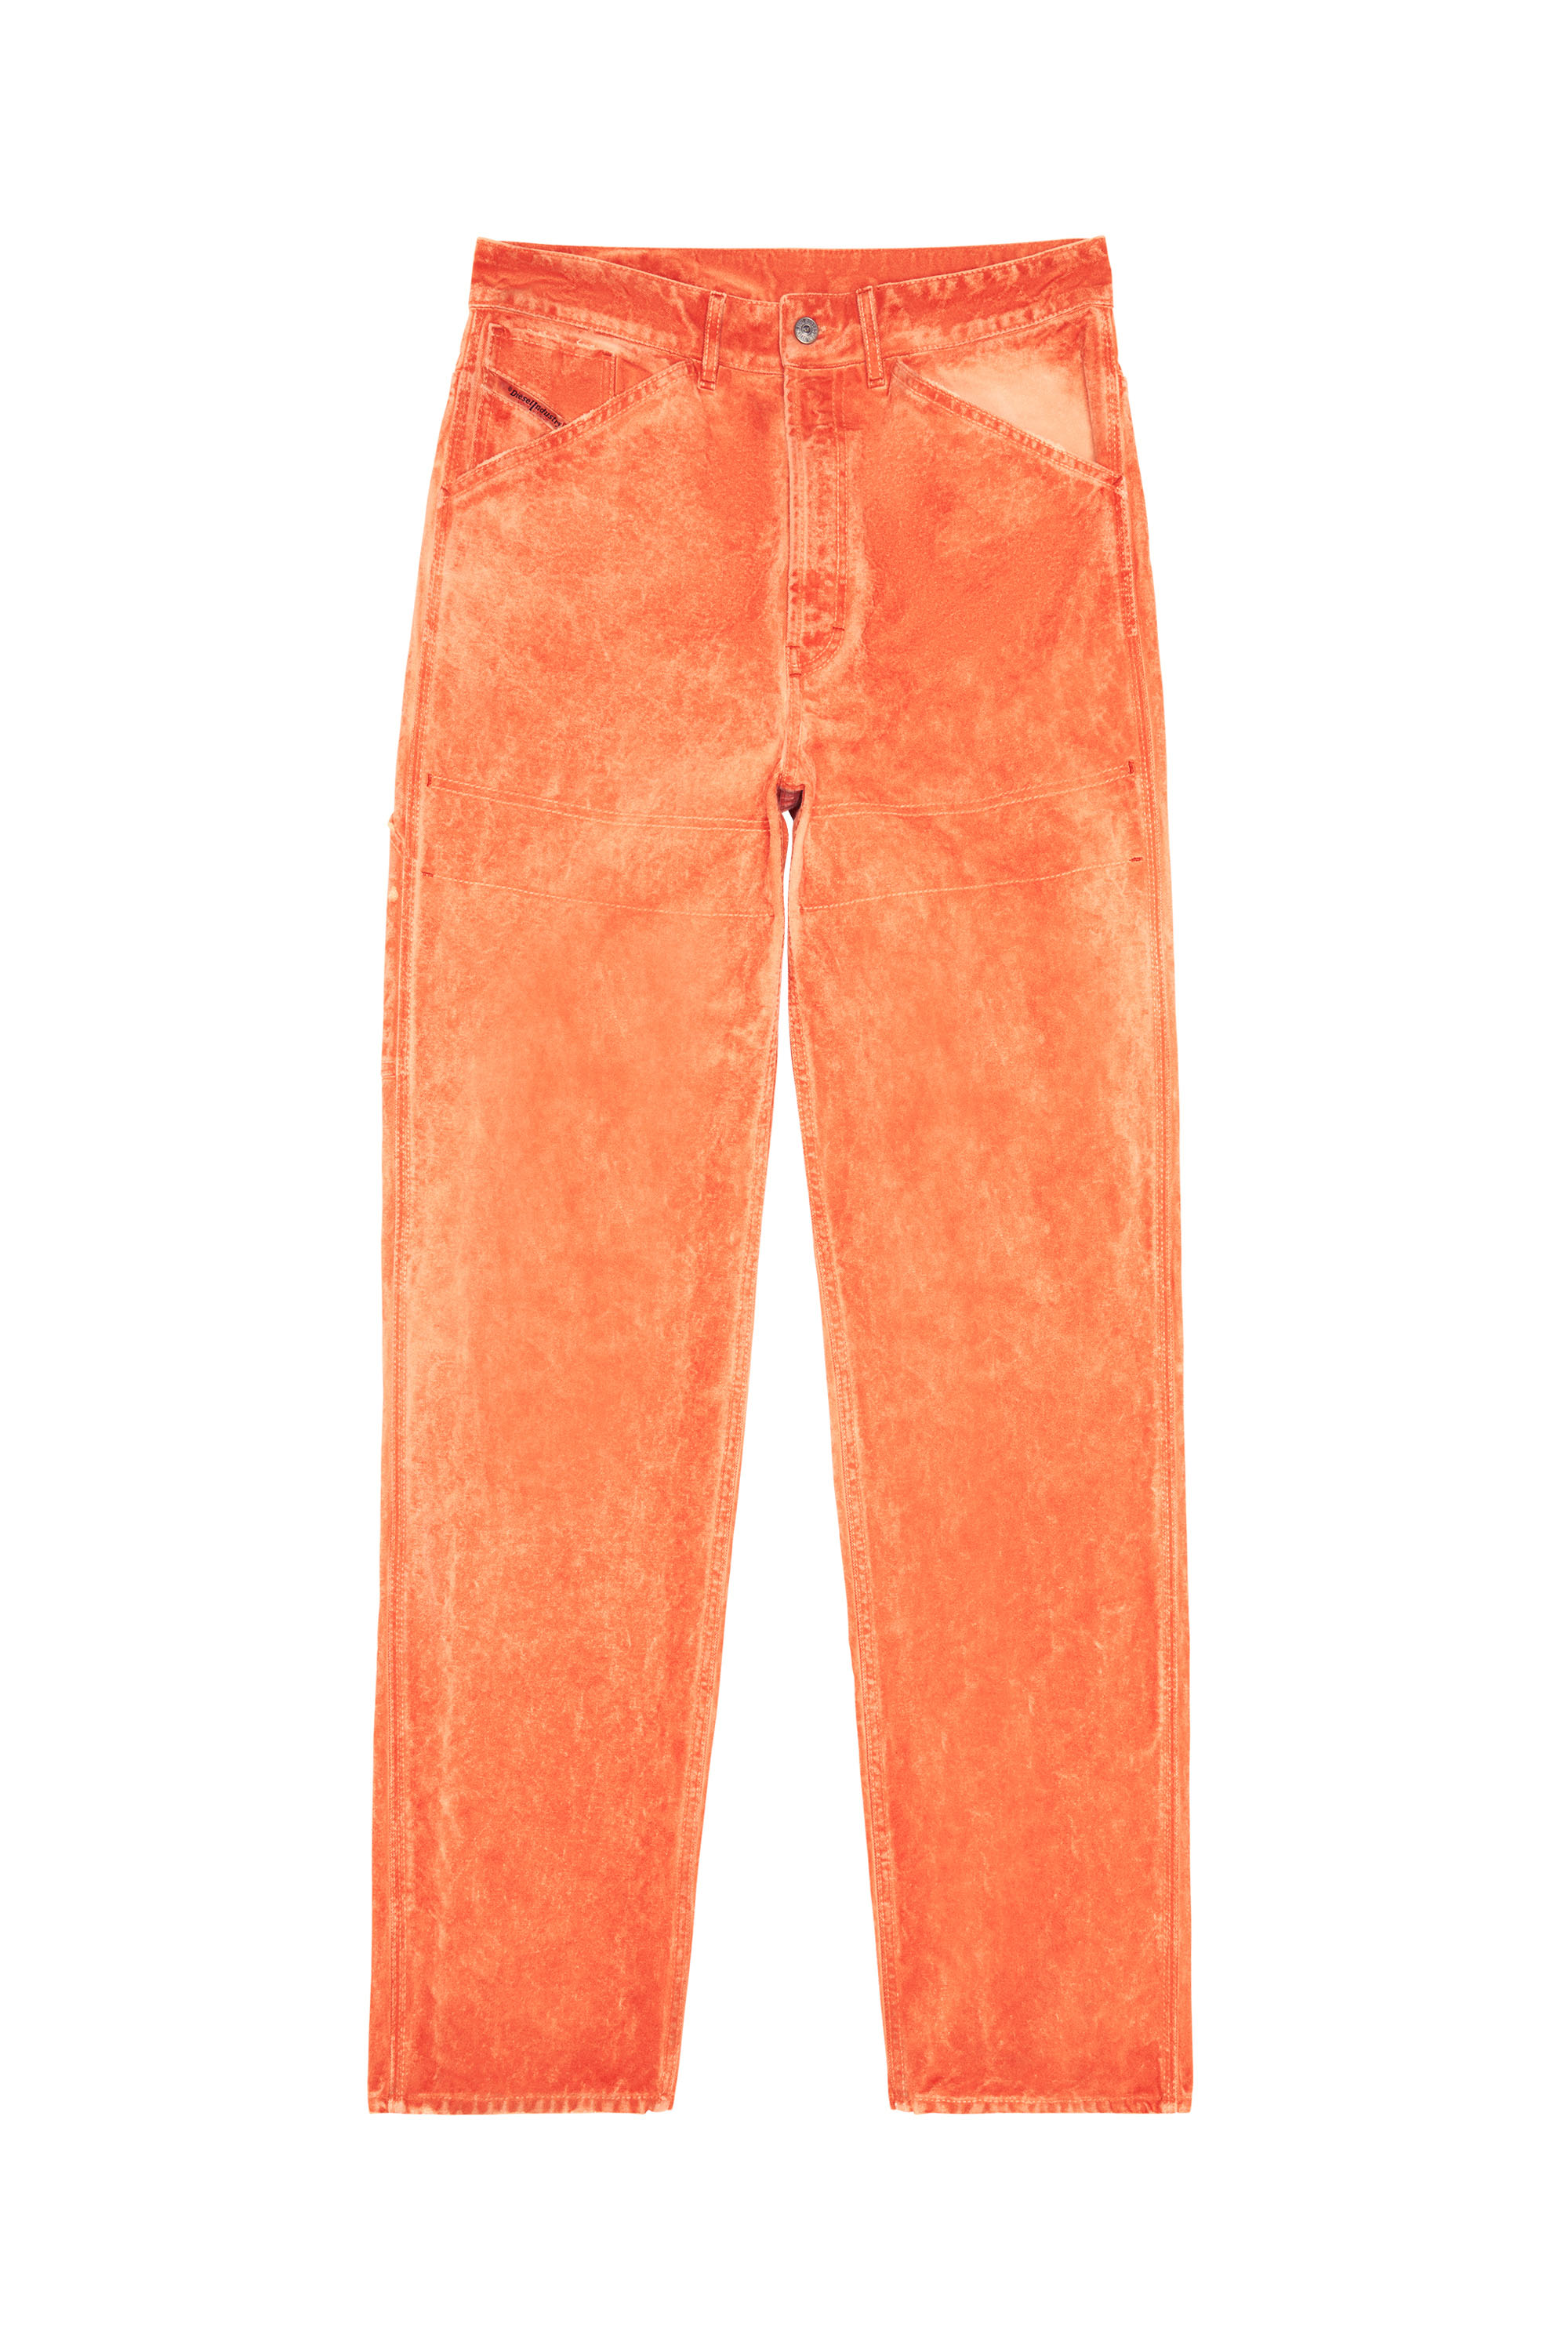 P-FRANKY, Orange - Pants